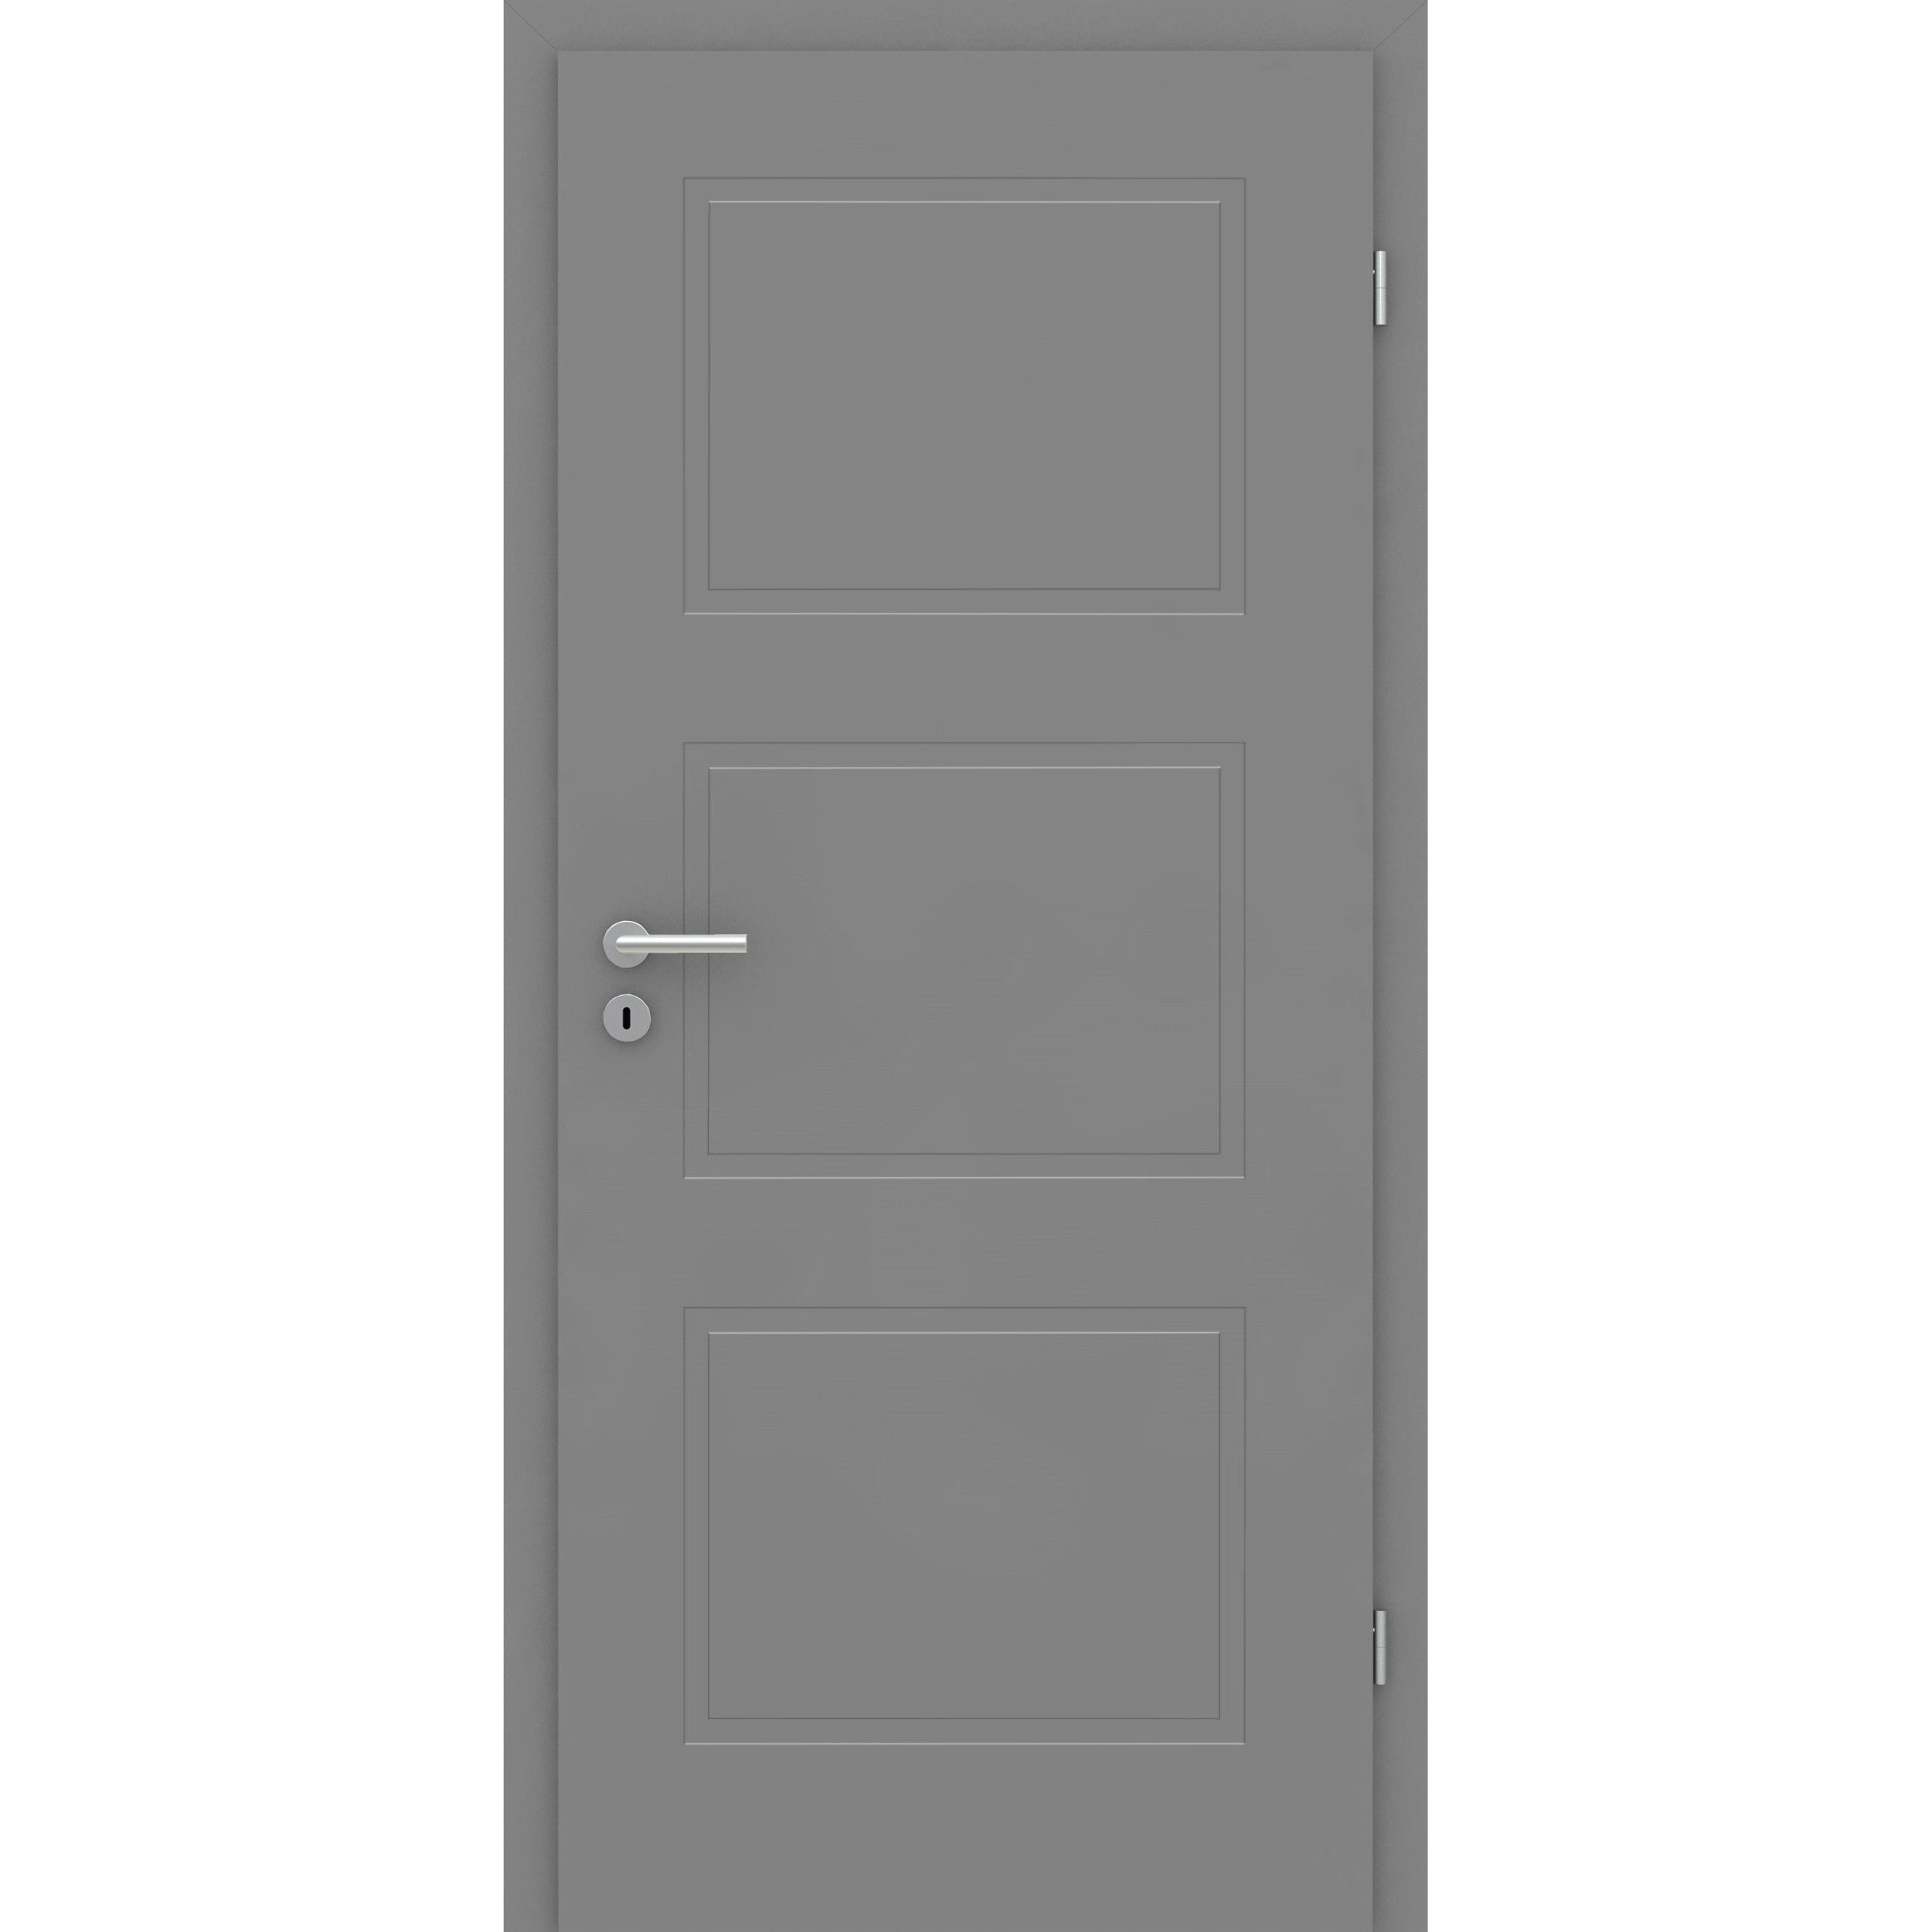 Wohnungseingangstür mit Zarge grau 3 Kassetten Designkante SK1 / KK3 - Modell Stiltür M37